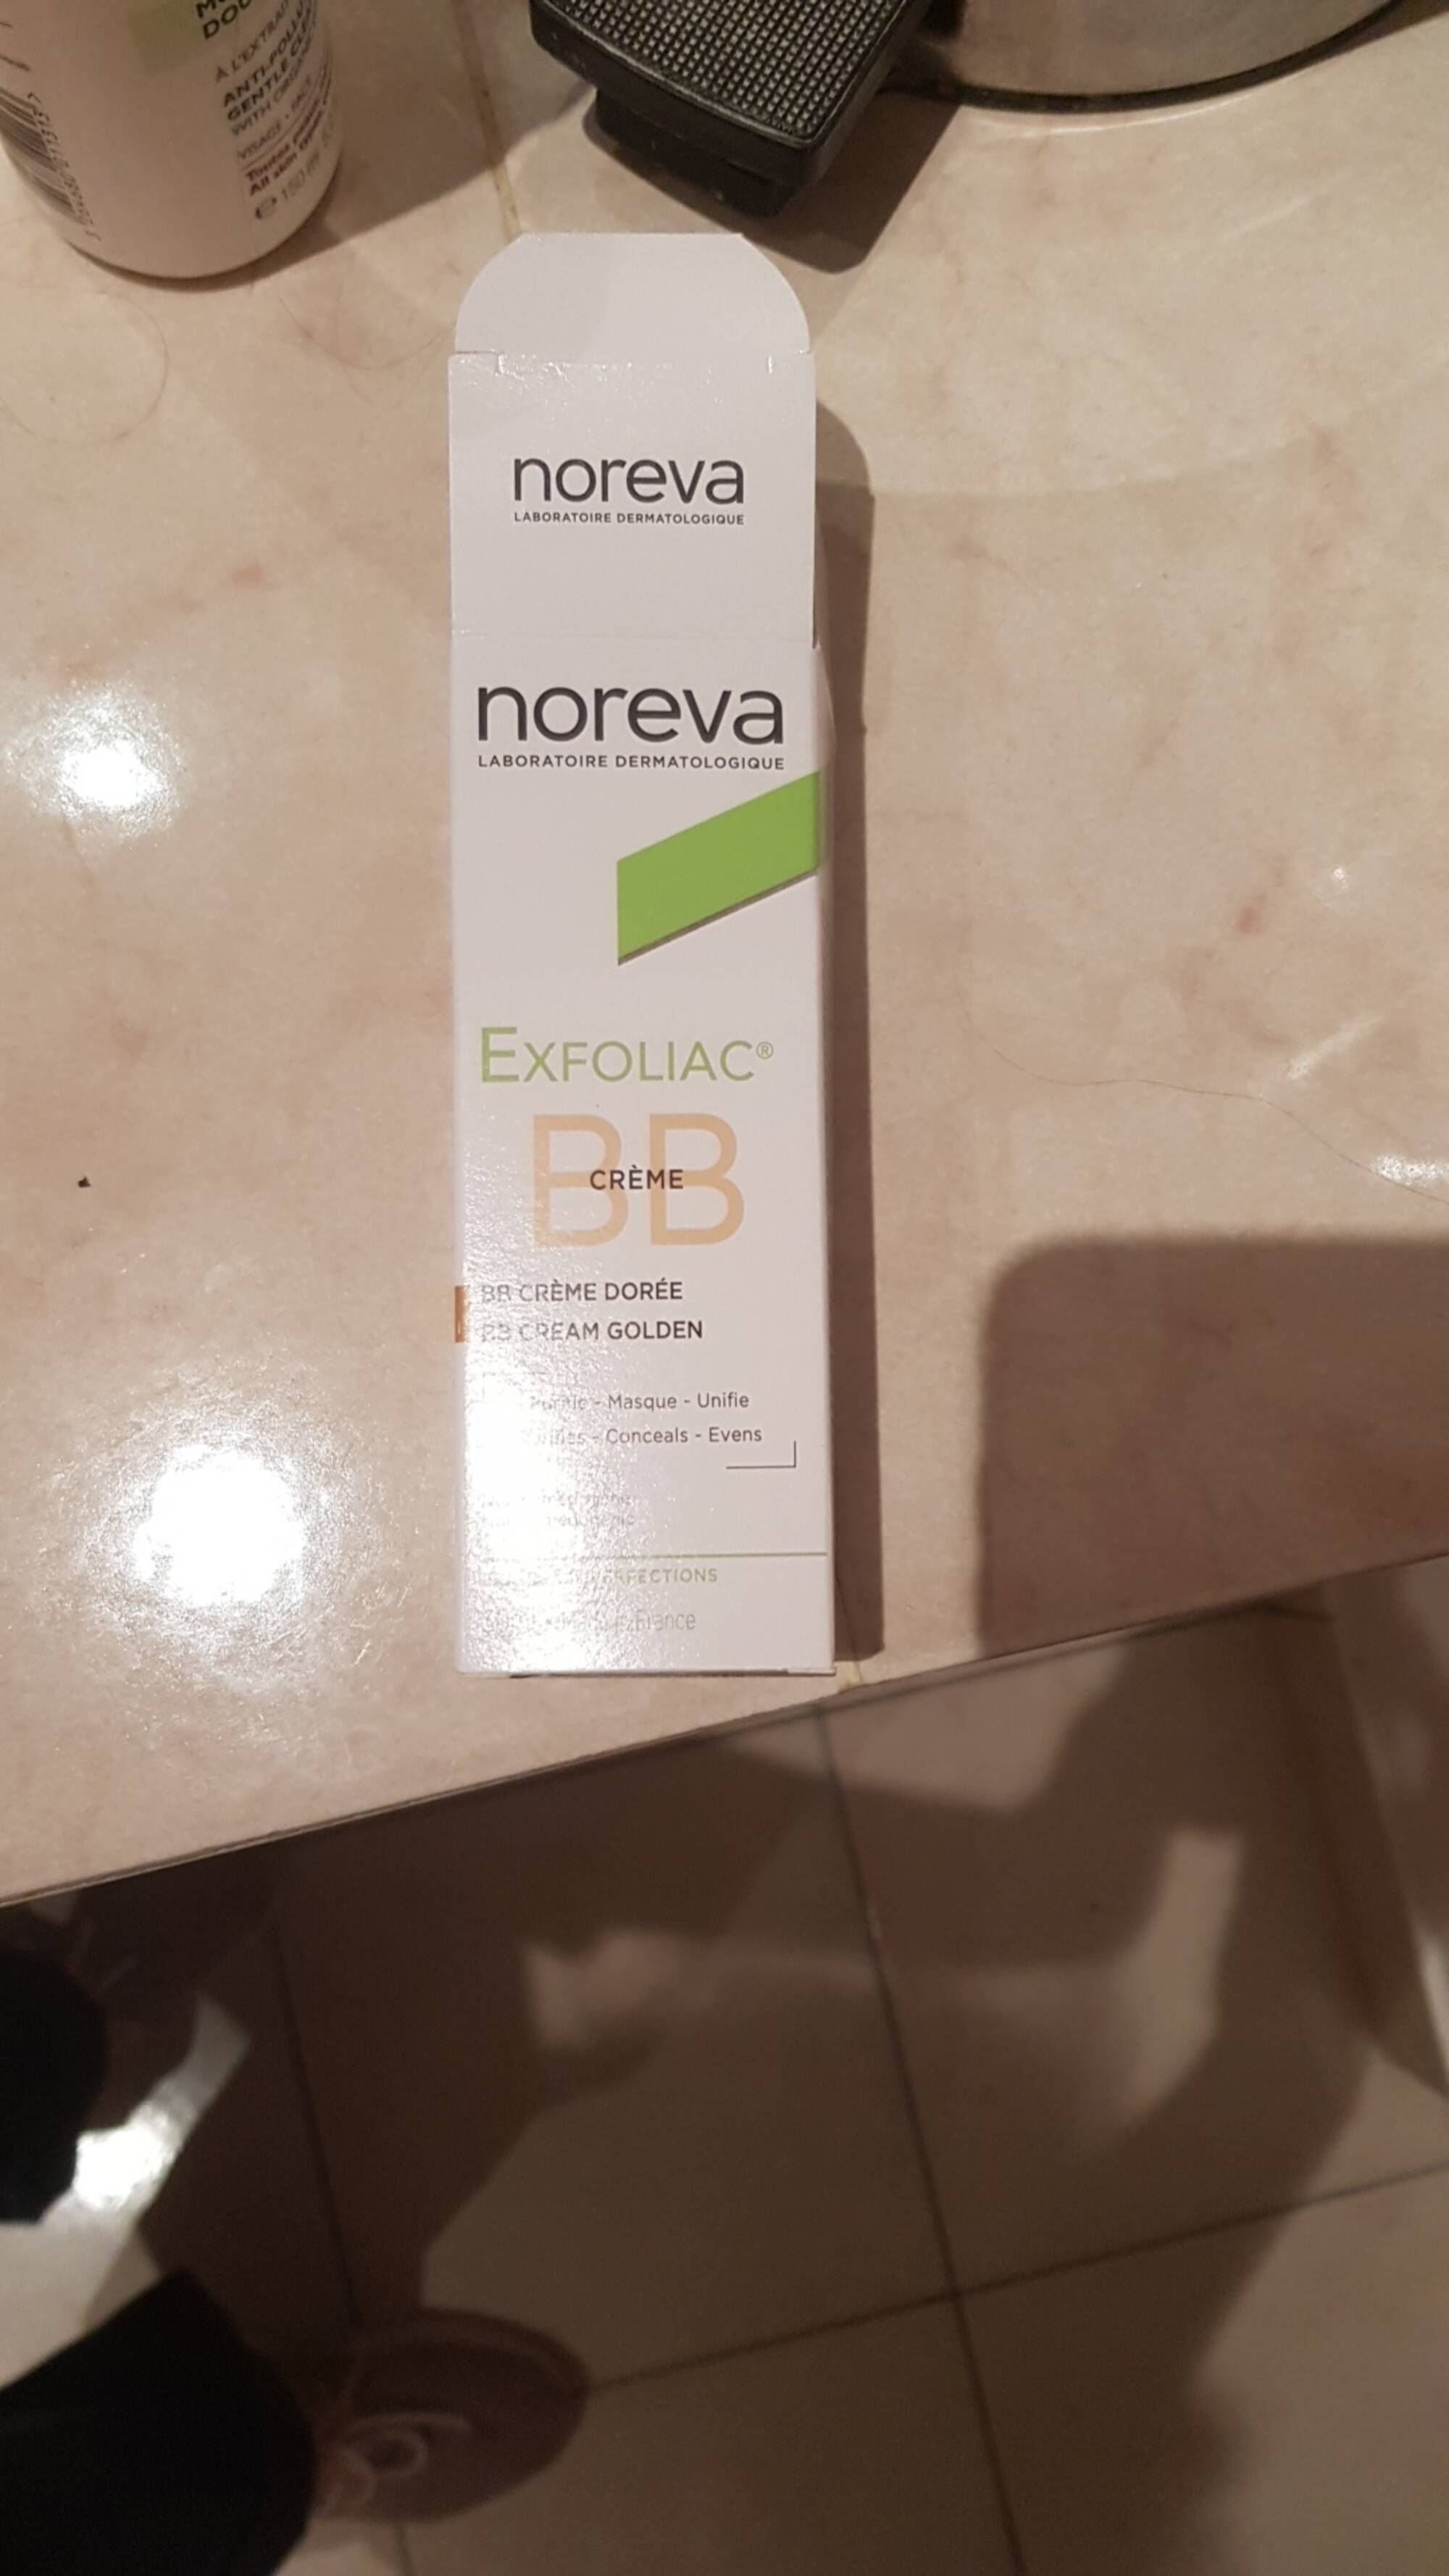 NOREVA - Exfoliac - BB crème dorée